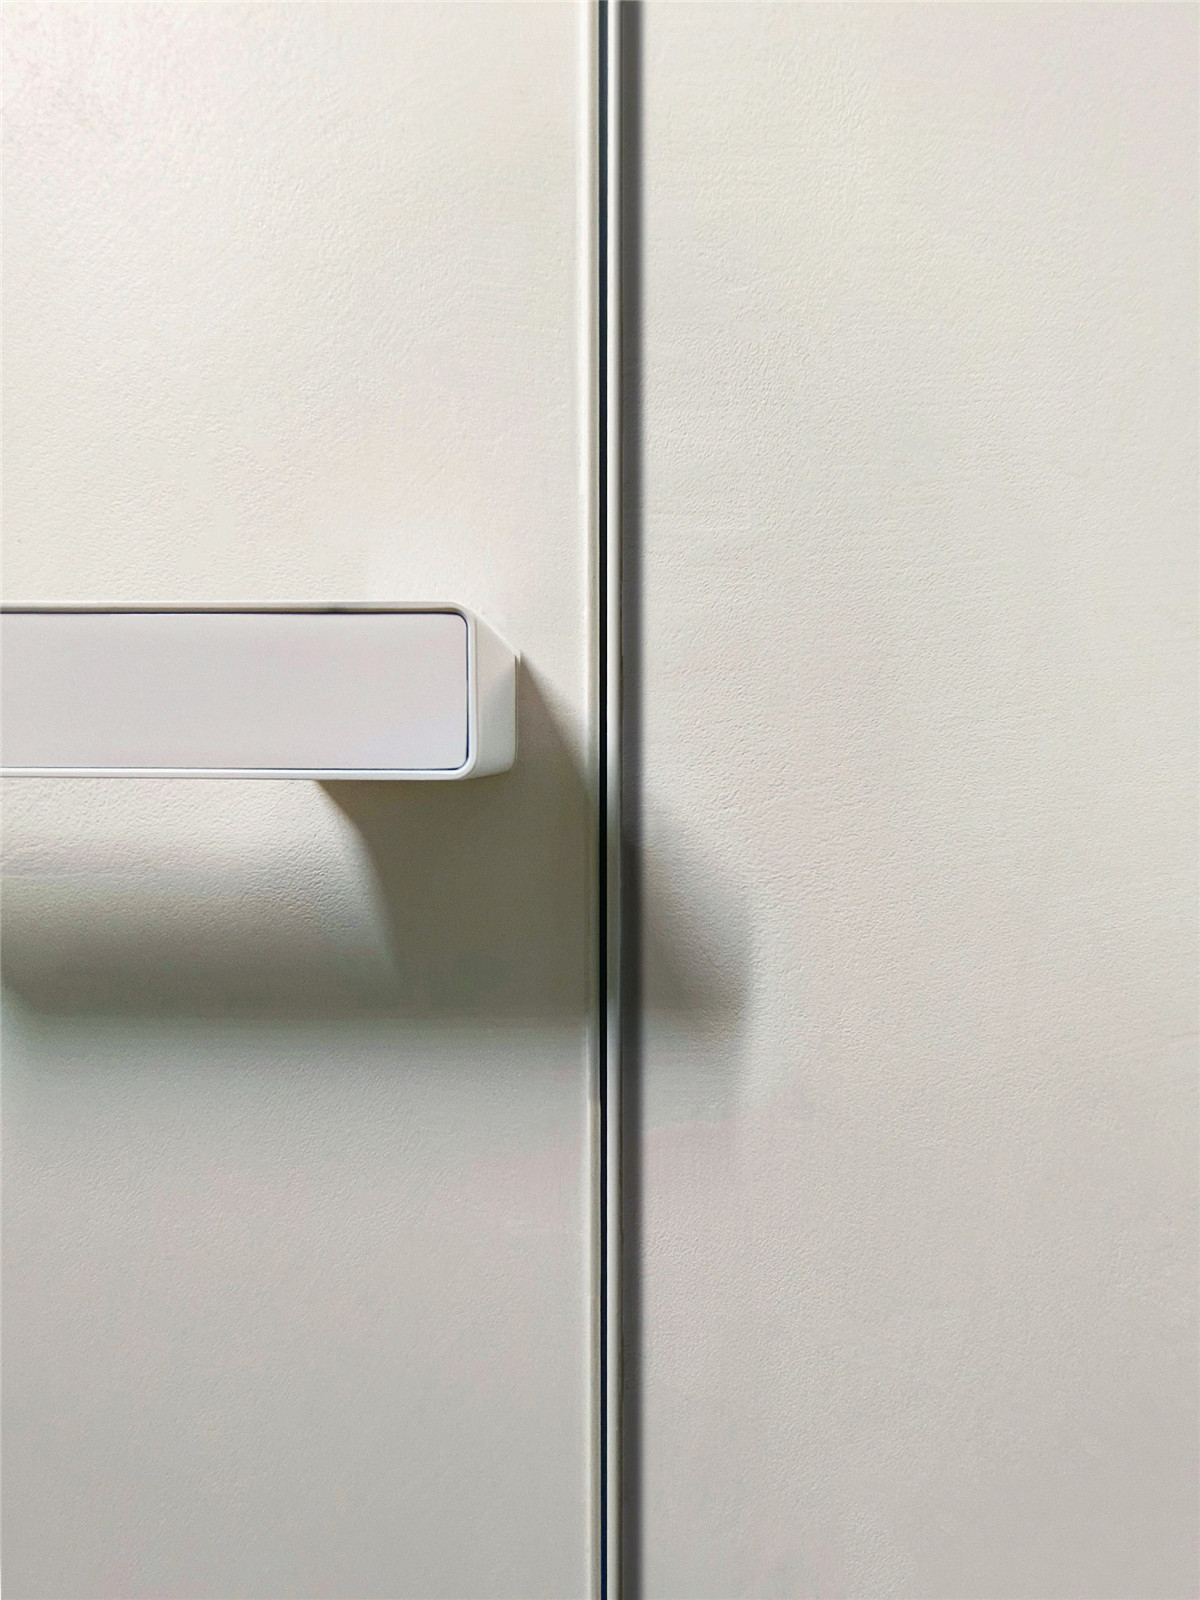 Raamlose deur vir stylvolle minimalistiese moderne interieurs-02 (5)